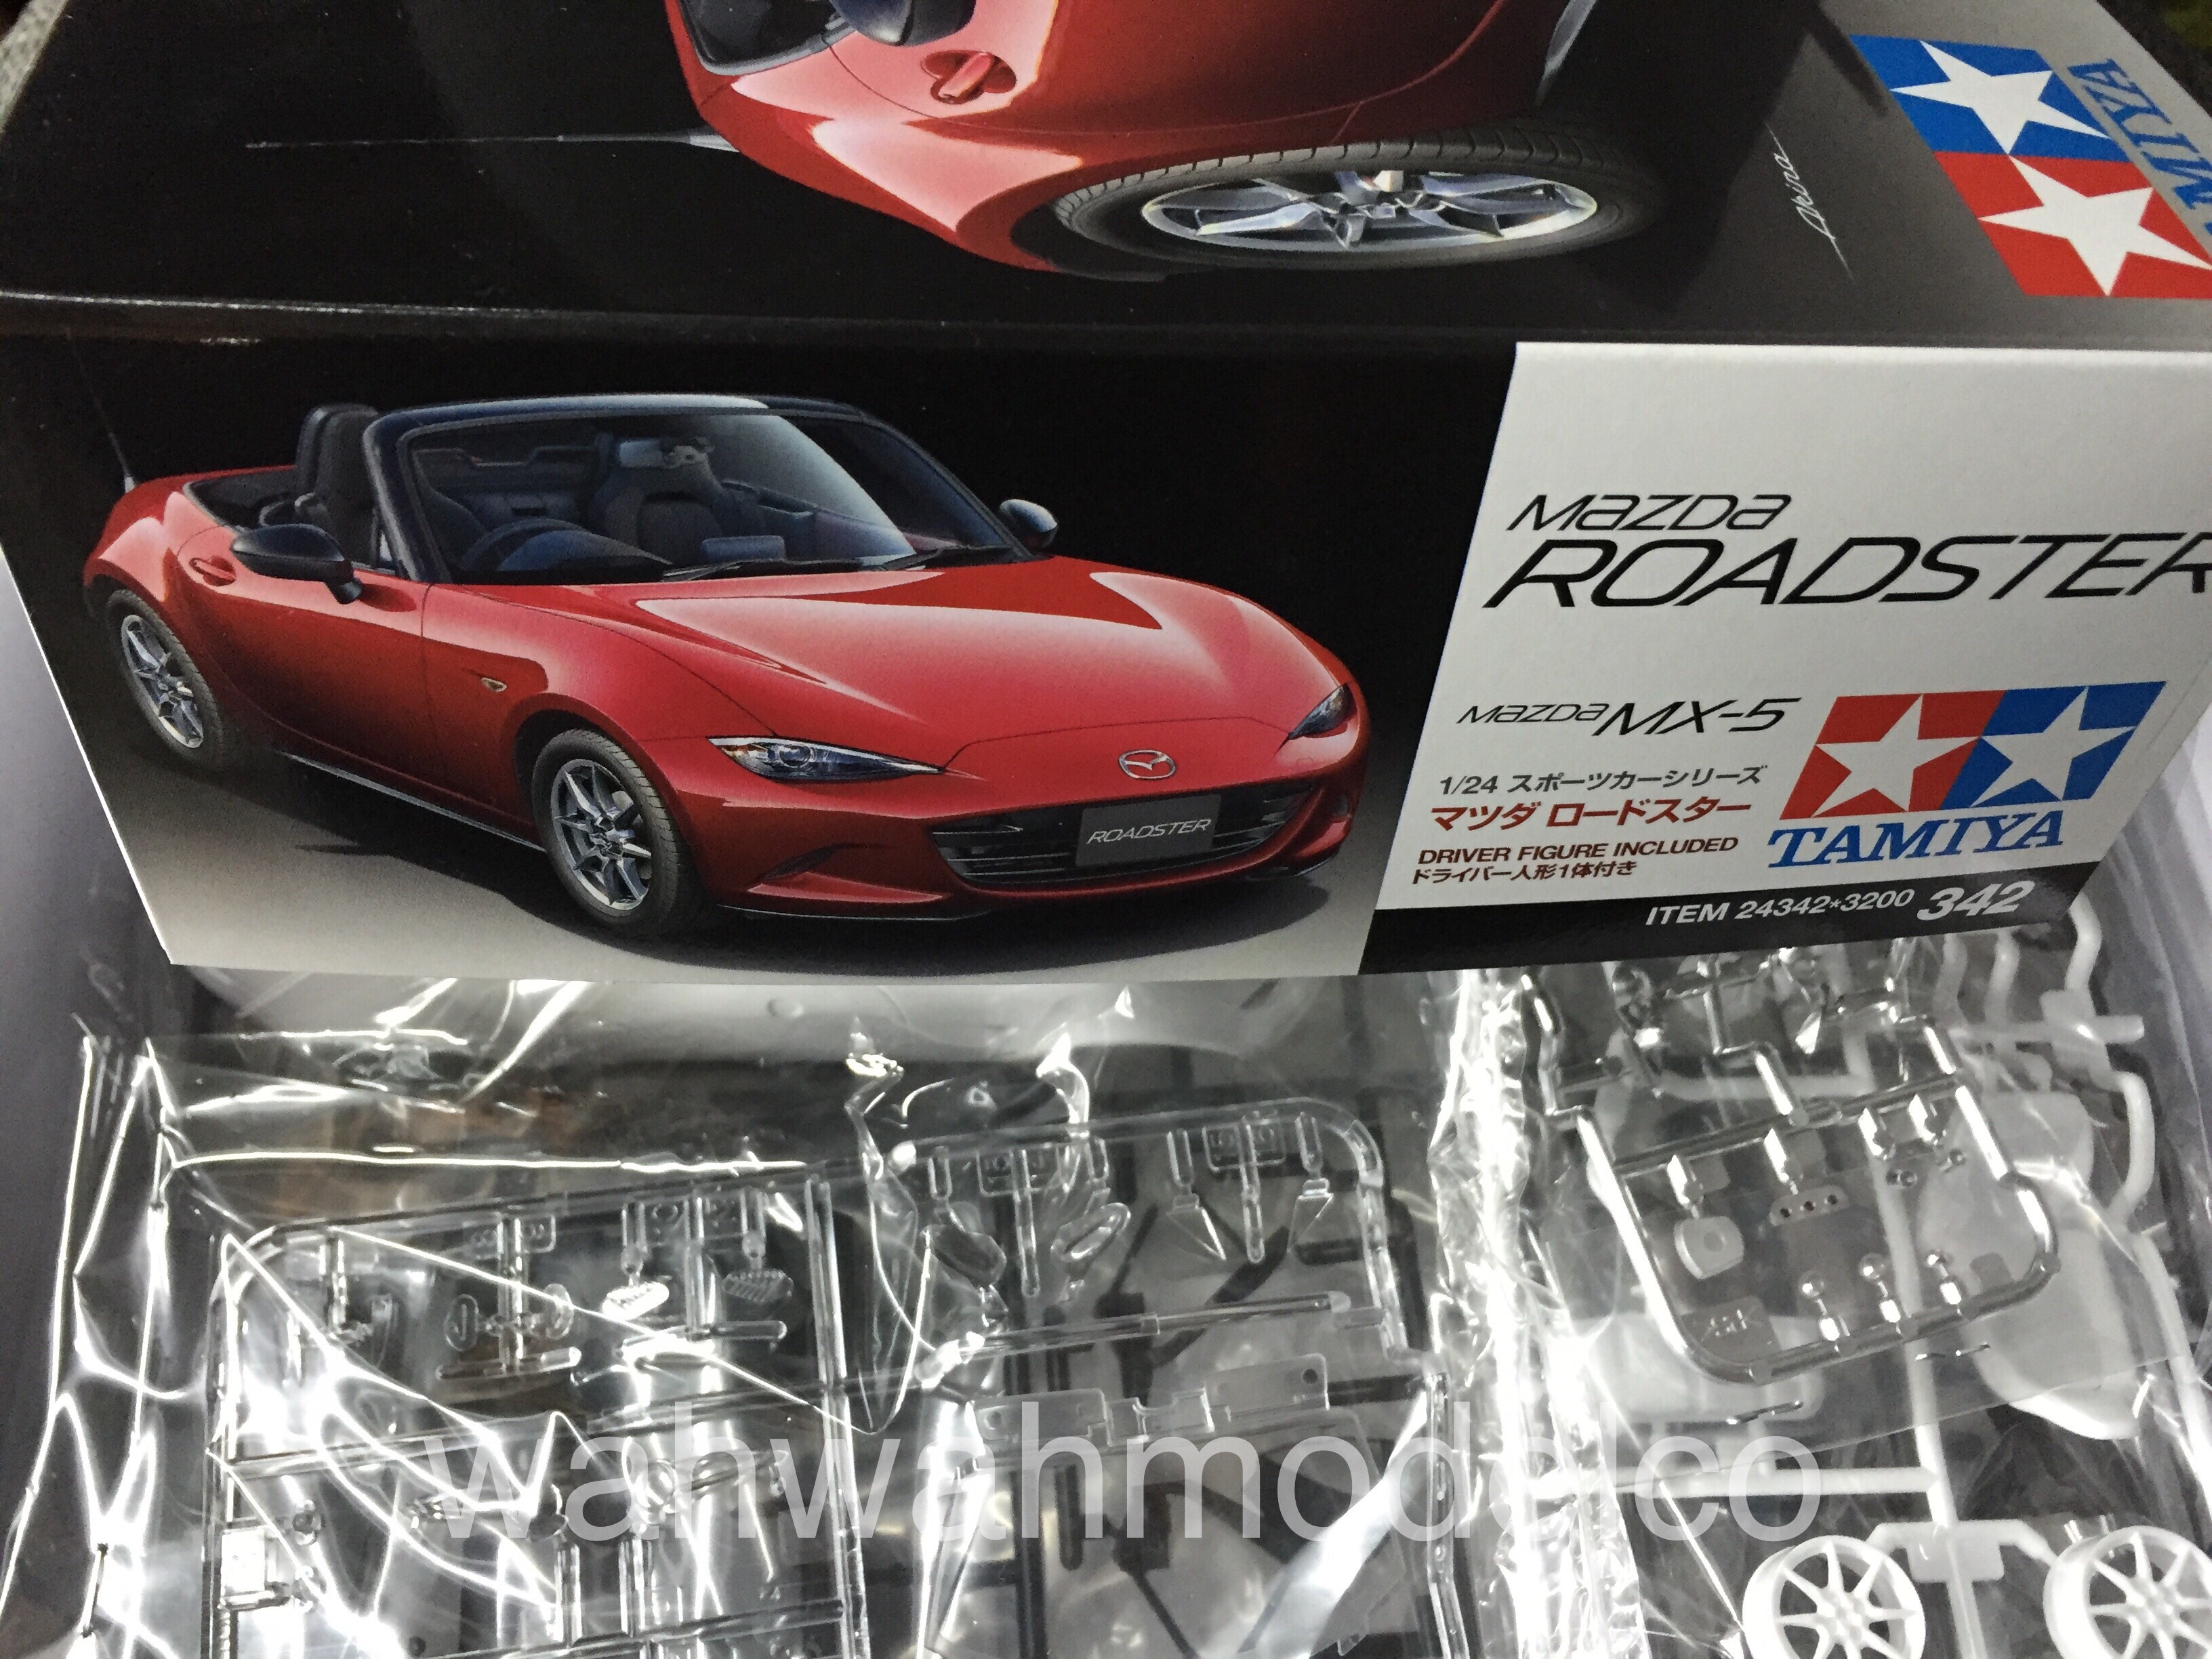 Tamiya 24342 Mazda Roadster MX-5 1:24 Scale Plastic Model Kit